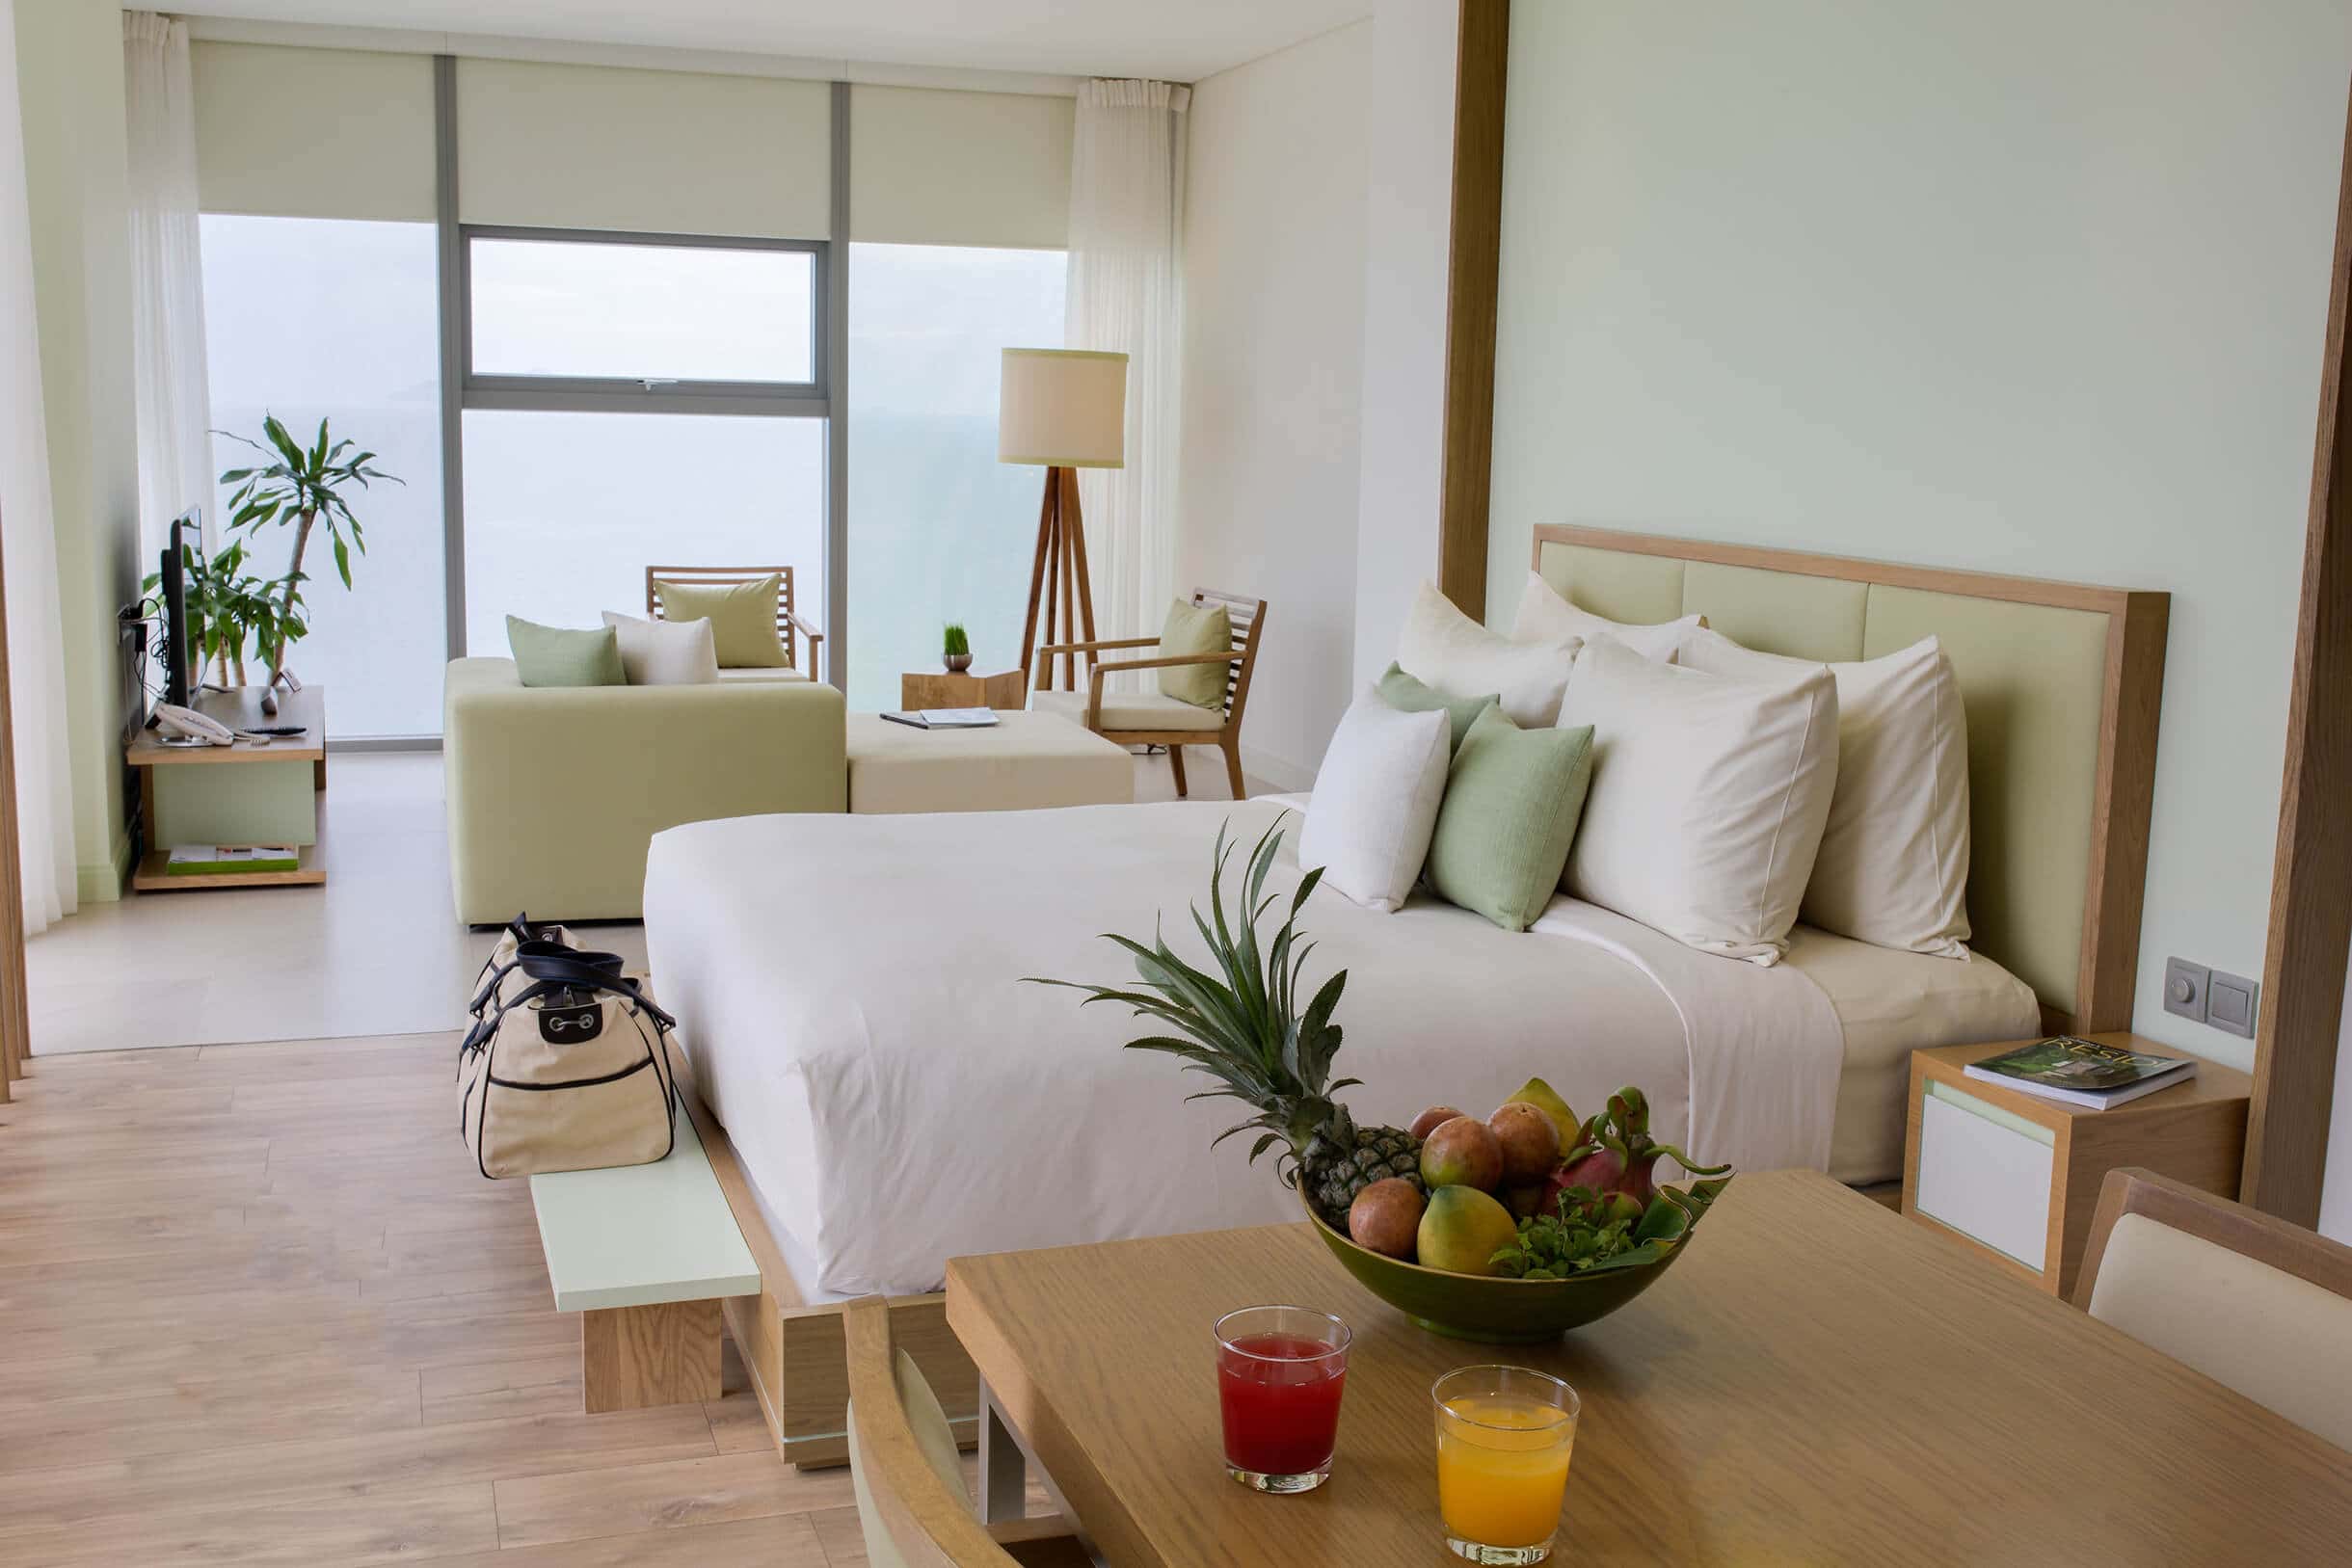 Phòng ngủ tại khách sạn Fusion Suites Đà Nẵng